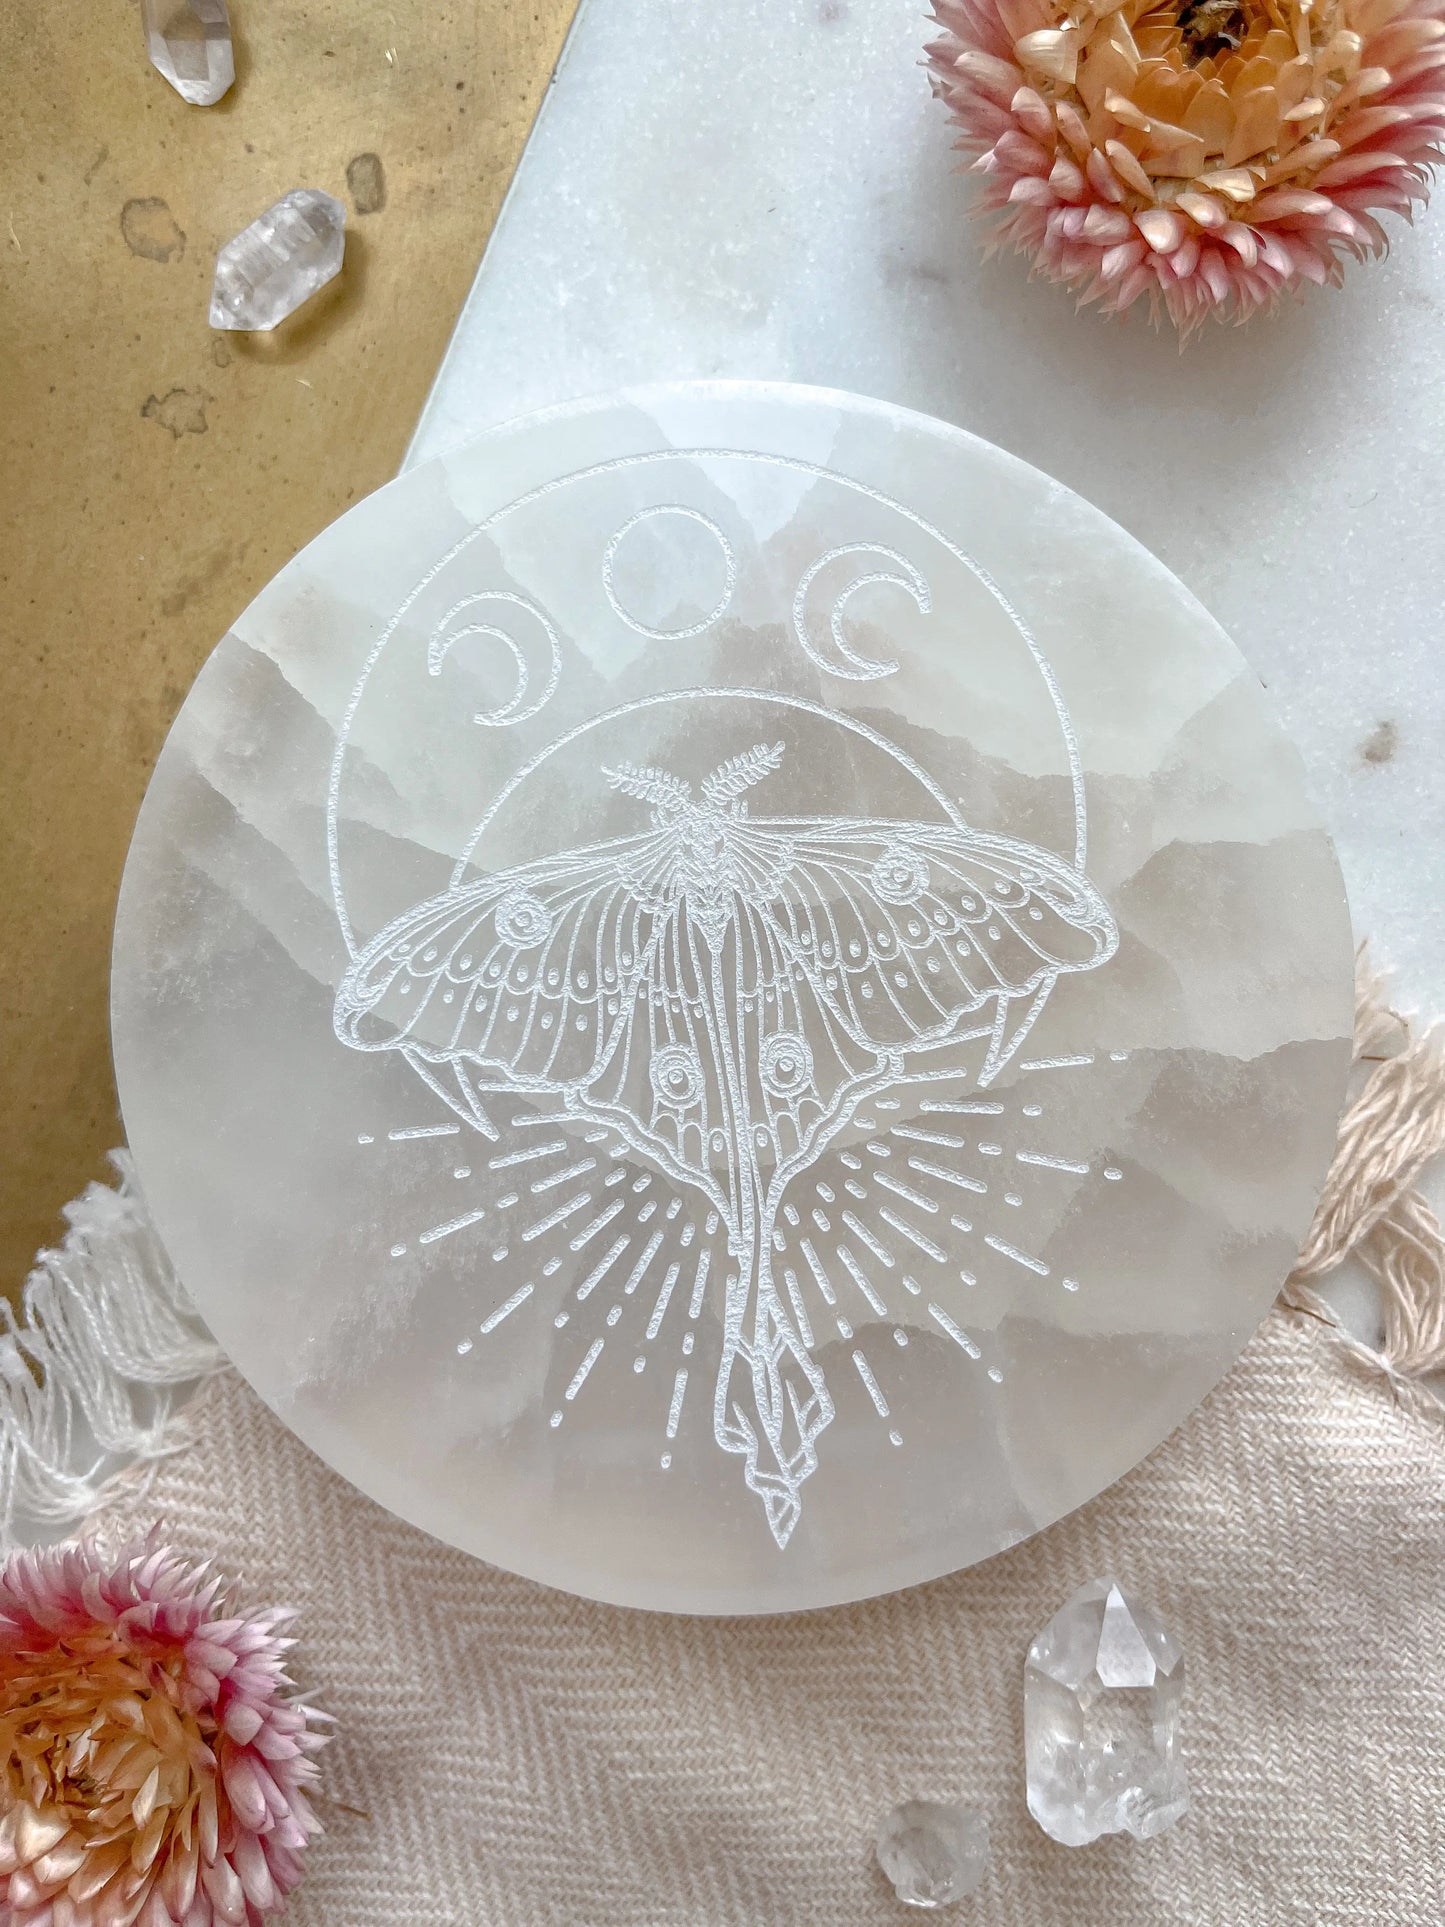 Mystic Luna Moth” Round Selenite Charging Disc fractalista designs faire